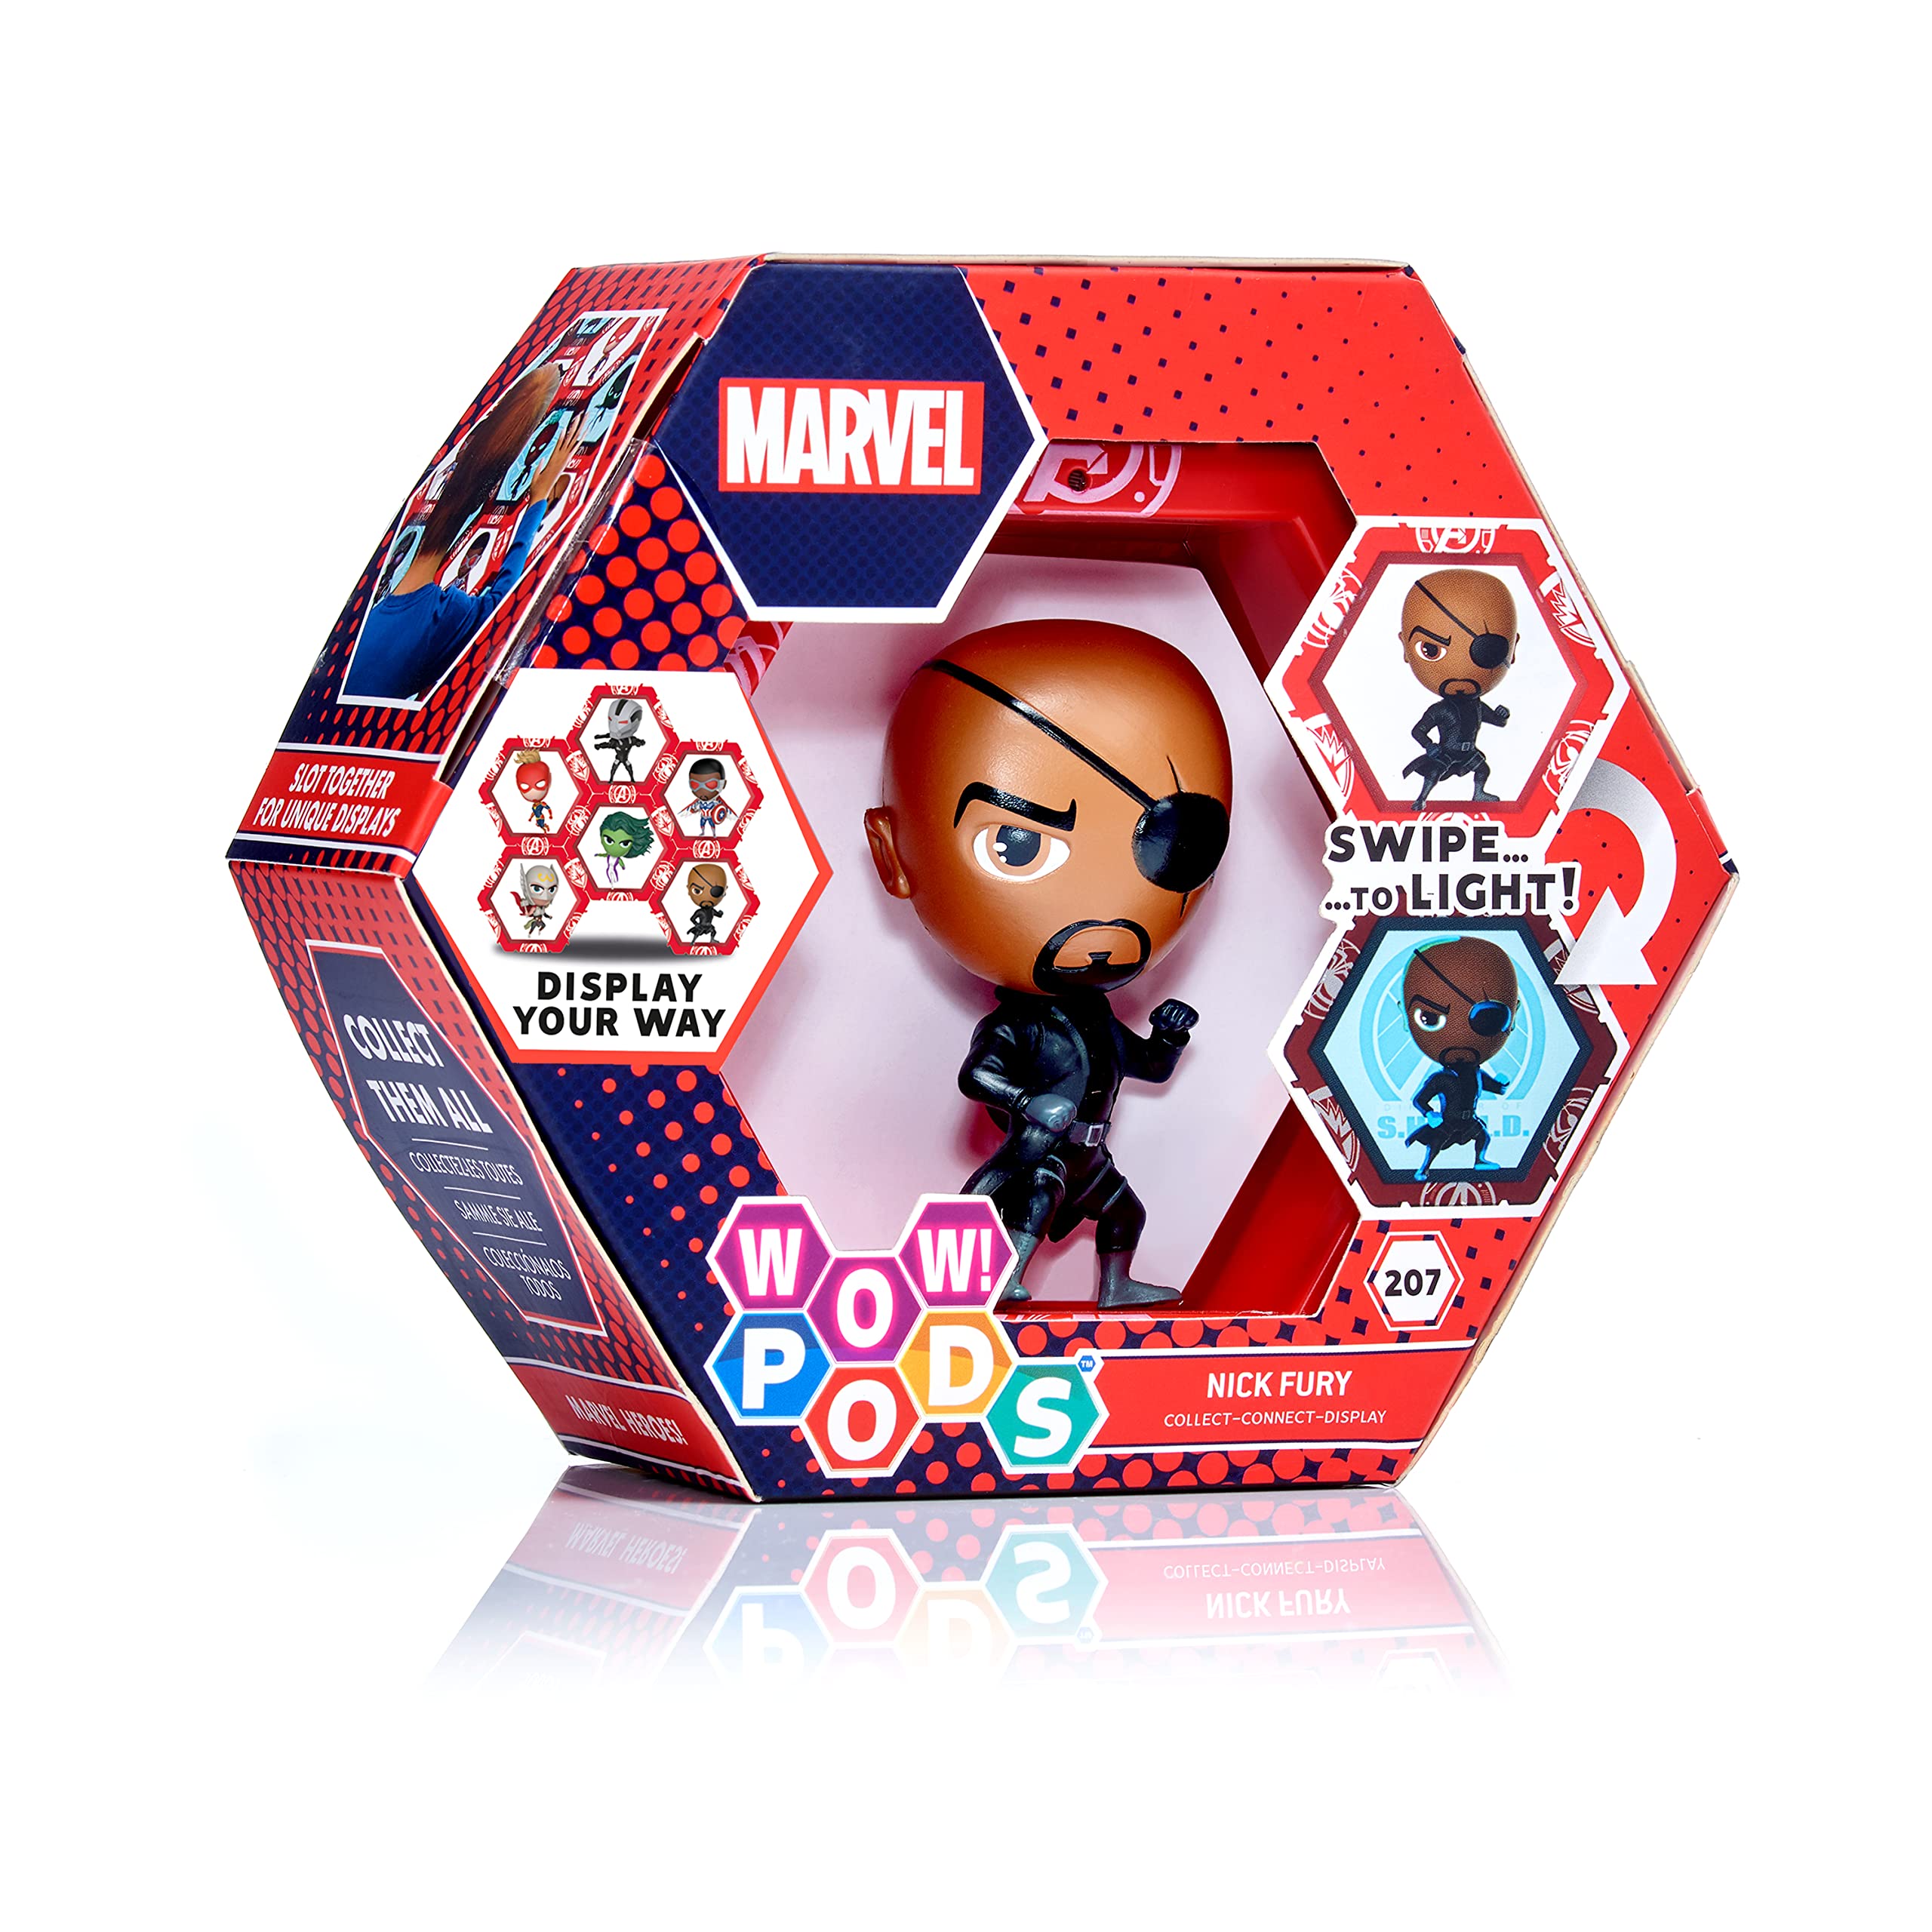 Wow! PODS Marvel Avengers Collection – Nick Fury Superhelden-Spielzeug, beleuchtete Wackelfigur, offizielles Marvel Sammlerstück, Spielzeug und Geschenke, Nummer 207 in der Serie, Mehrfarbig